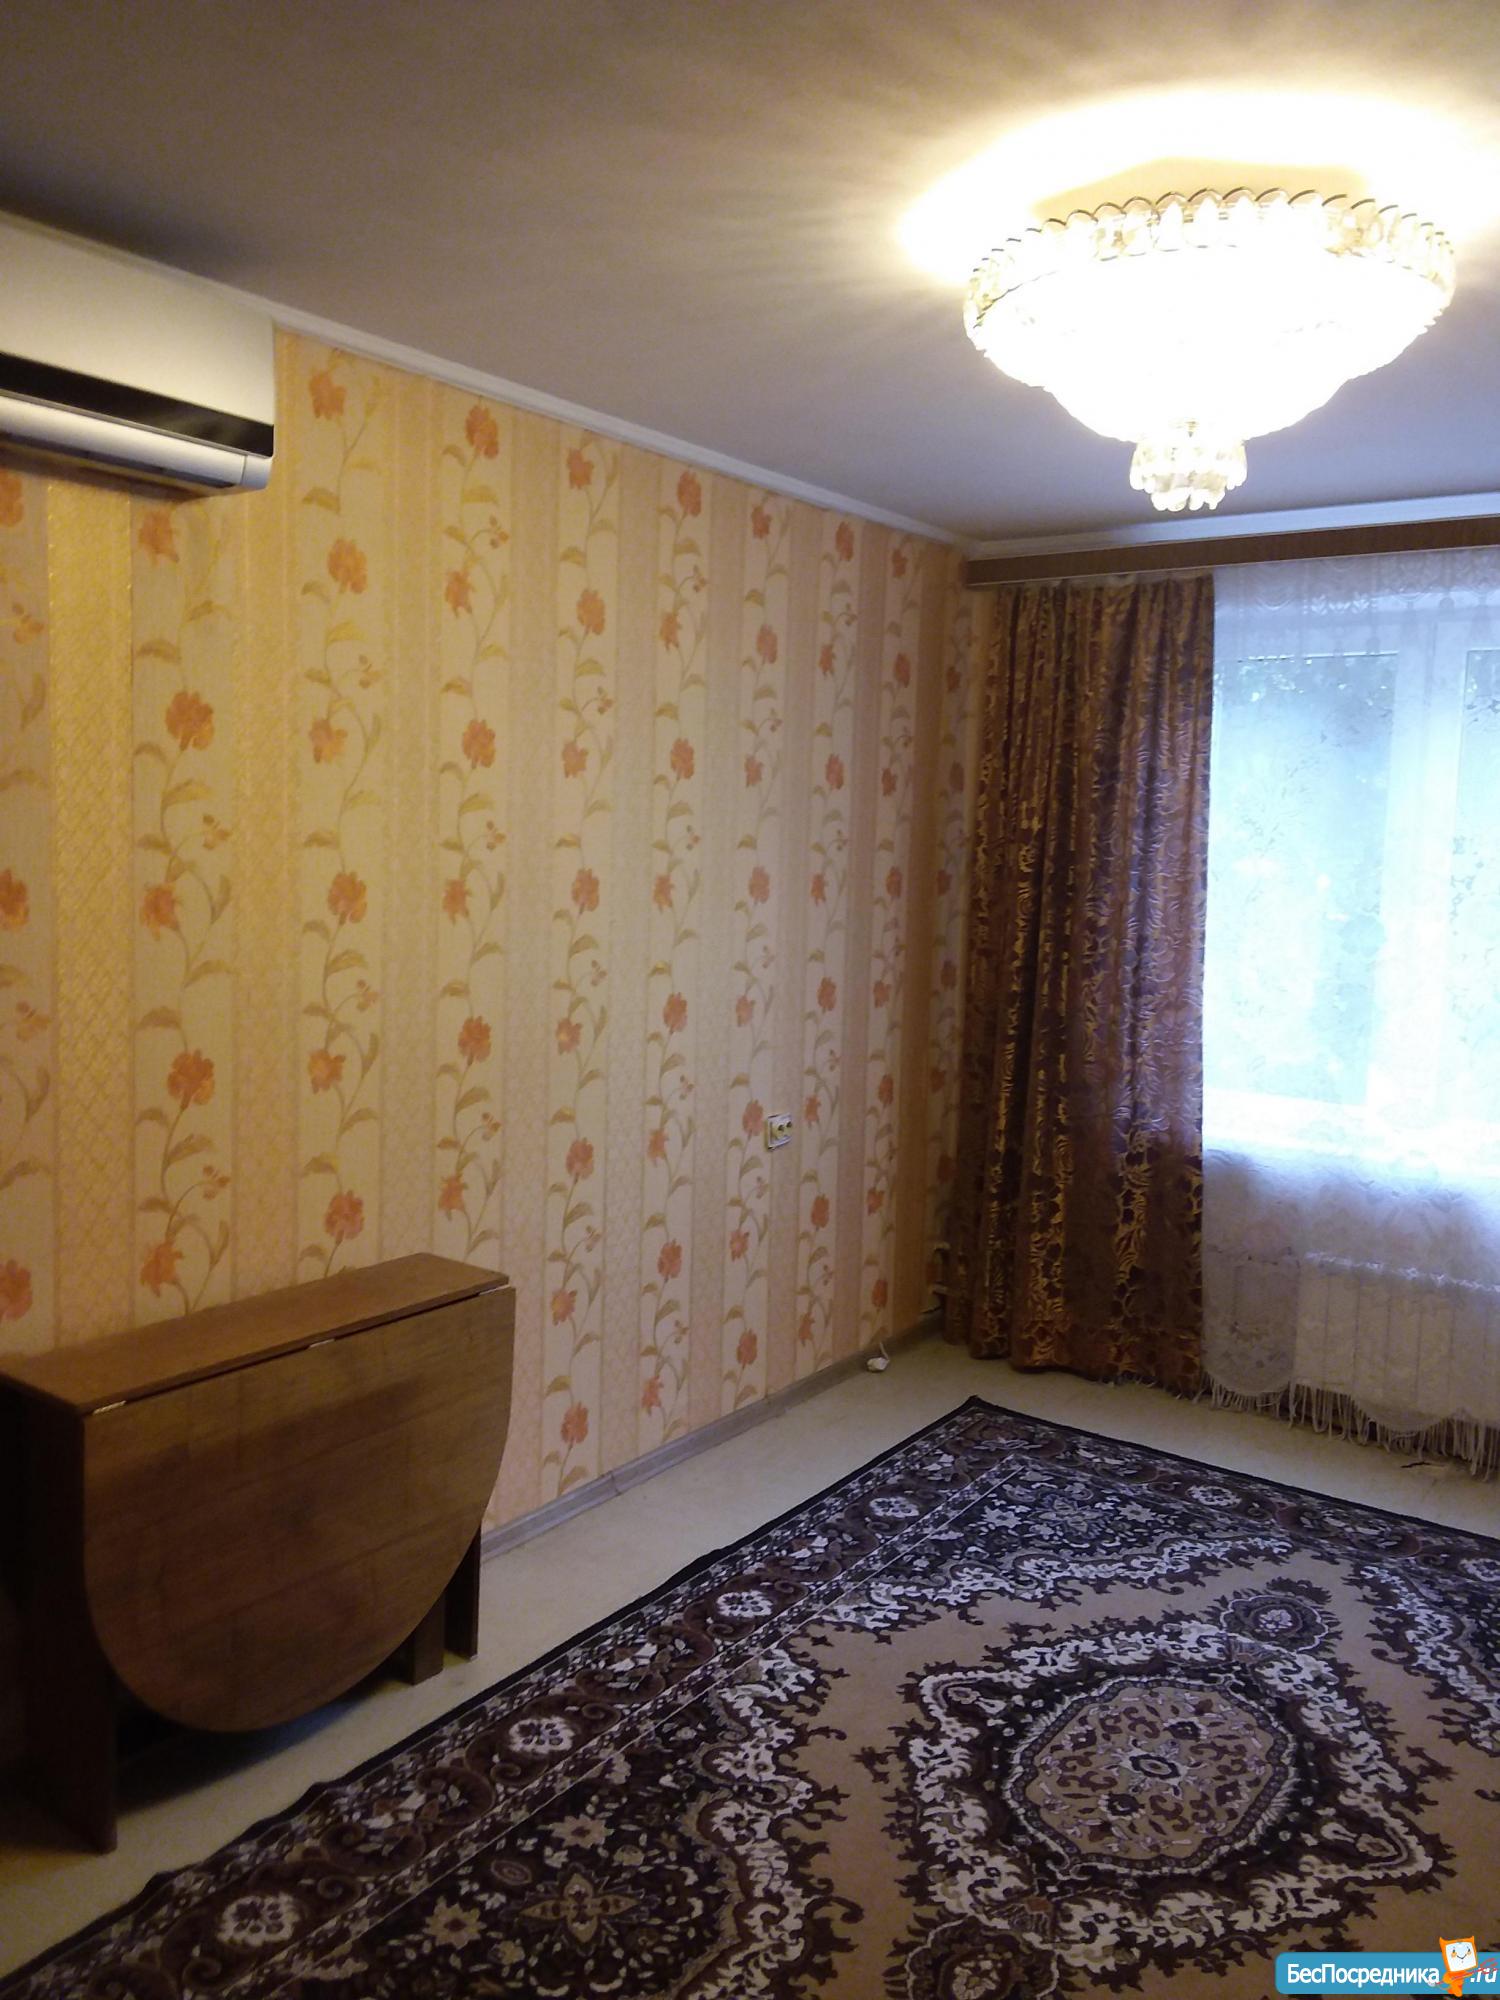 Сдача комнат в аренду в районе Ясенево.г.Москва.. Ясеневая 19